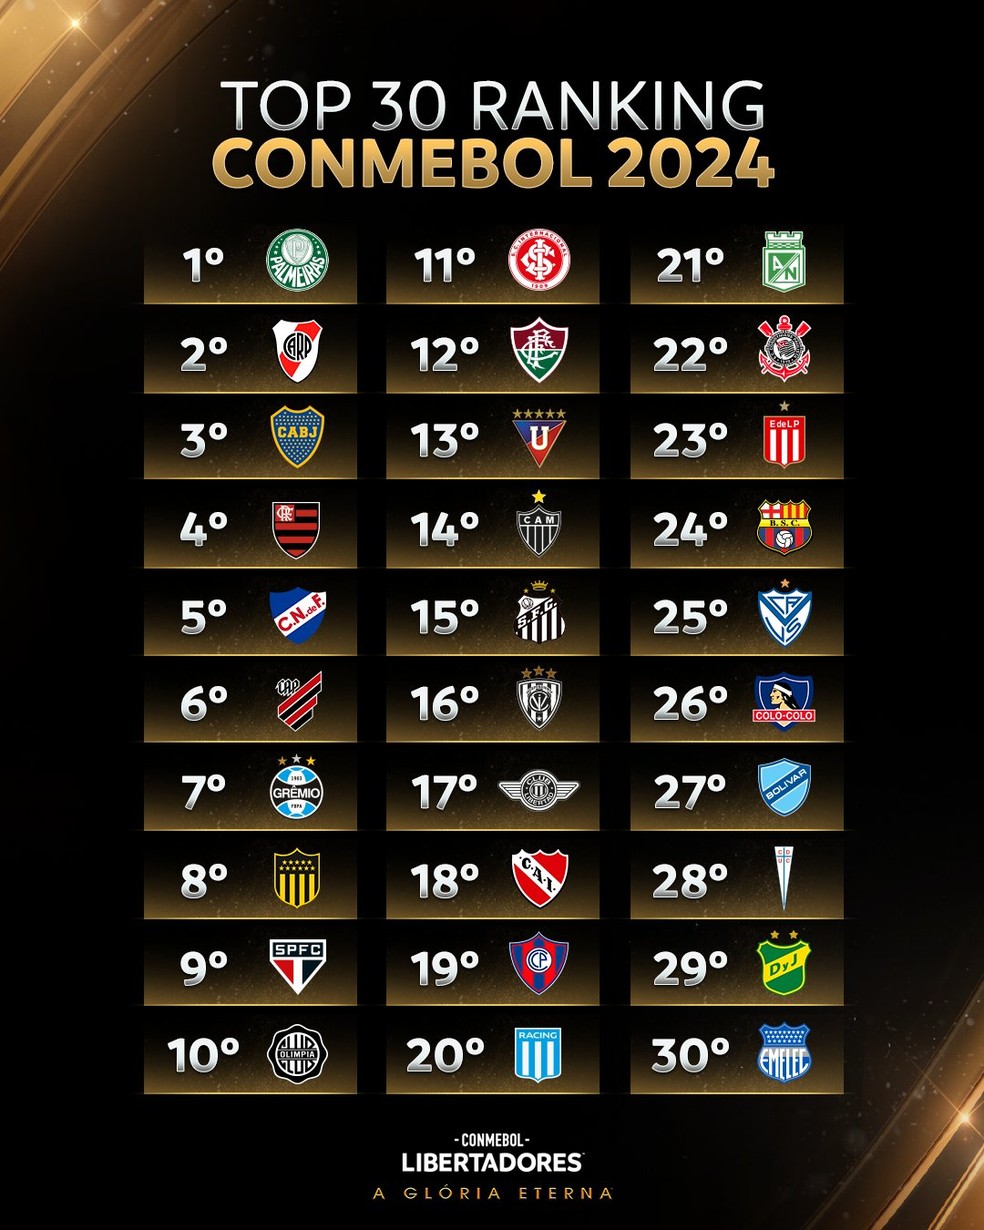 Libertadores 2023: fase de grupos começa nesta terça; veja os